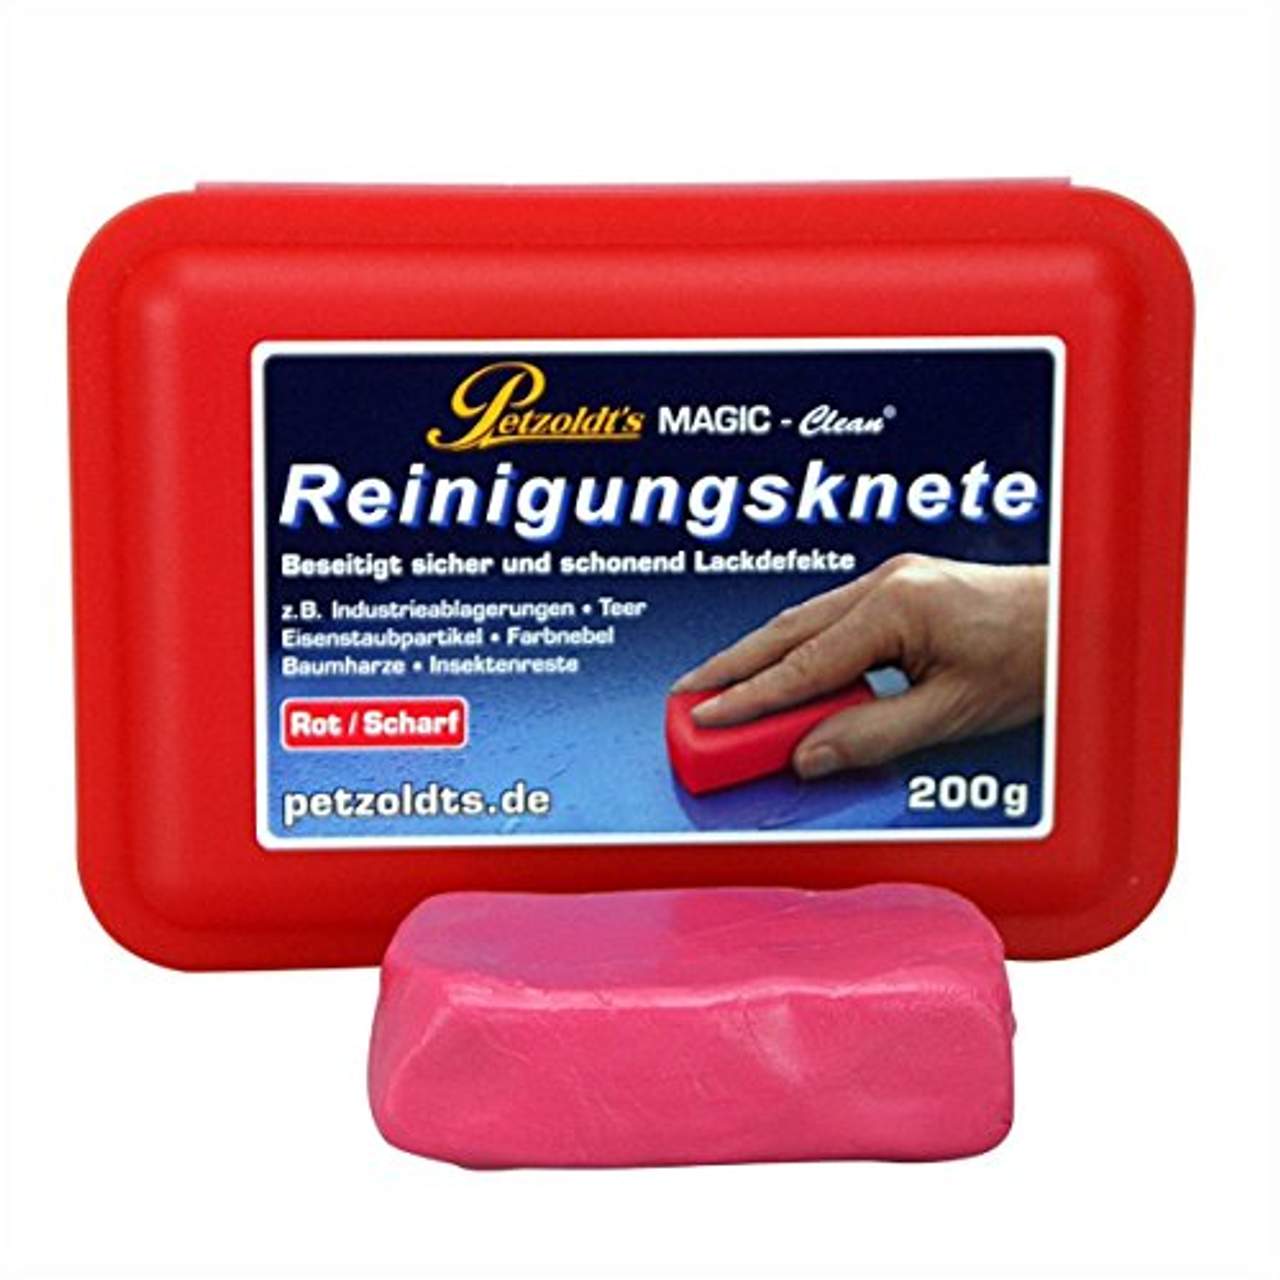 Petzoldt's Reinigungsknete MAGIC-Clean 200g rot/scharf